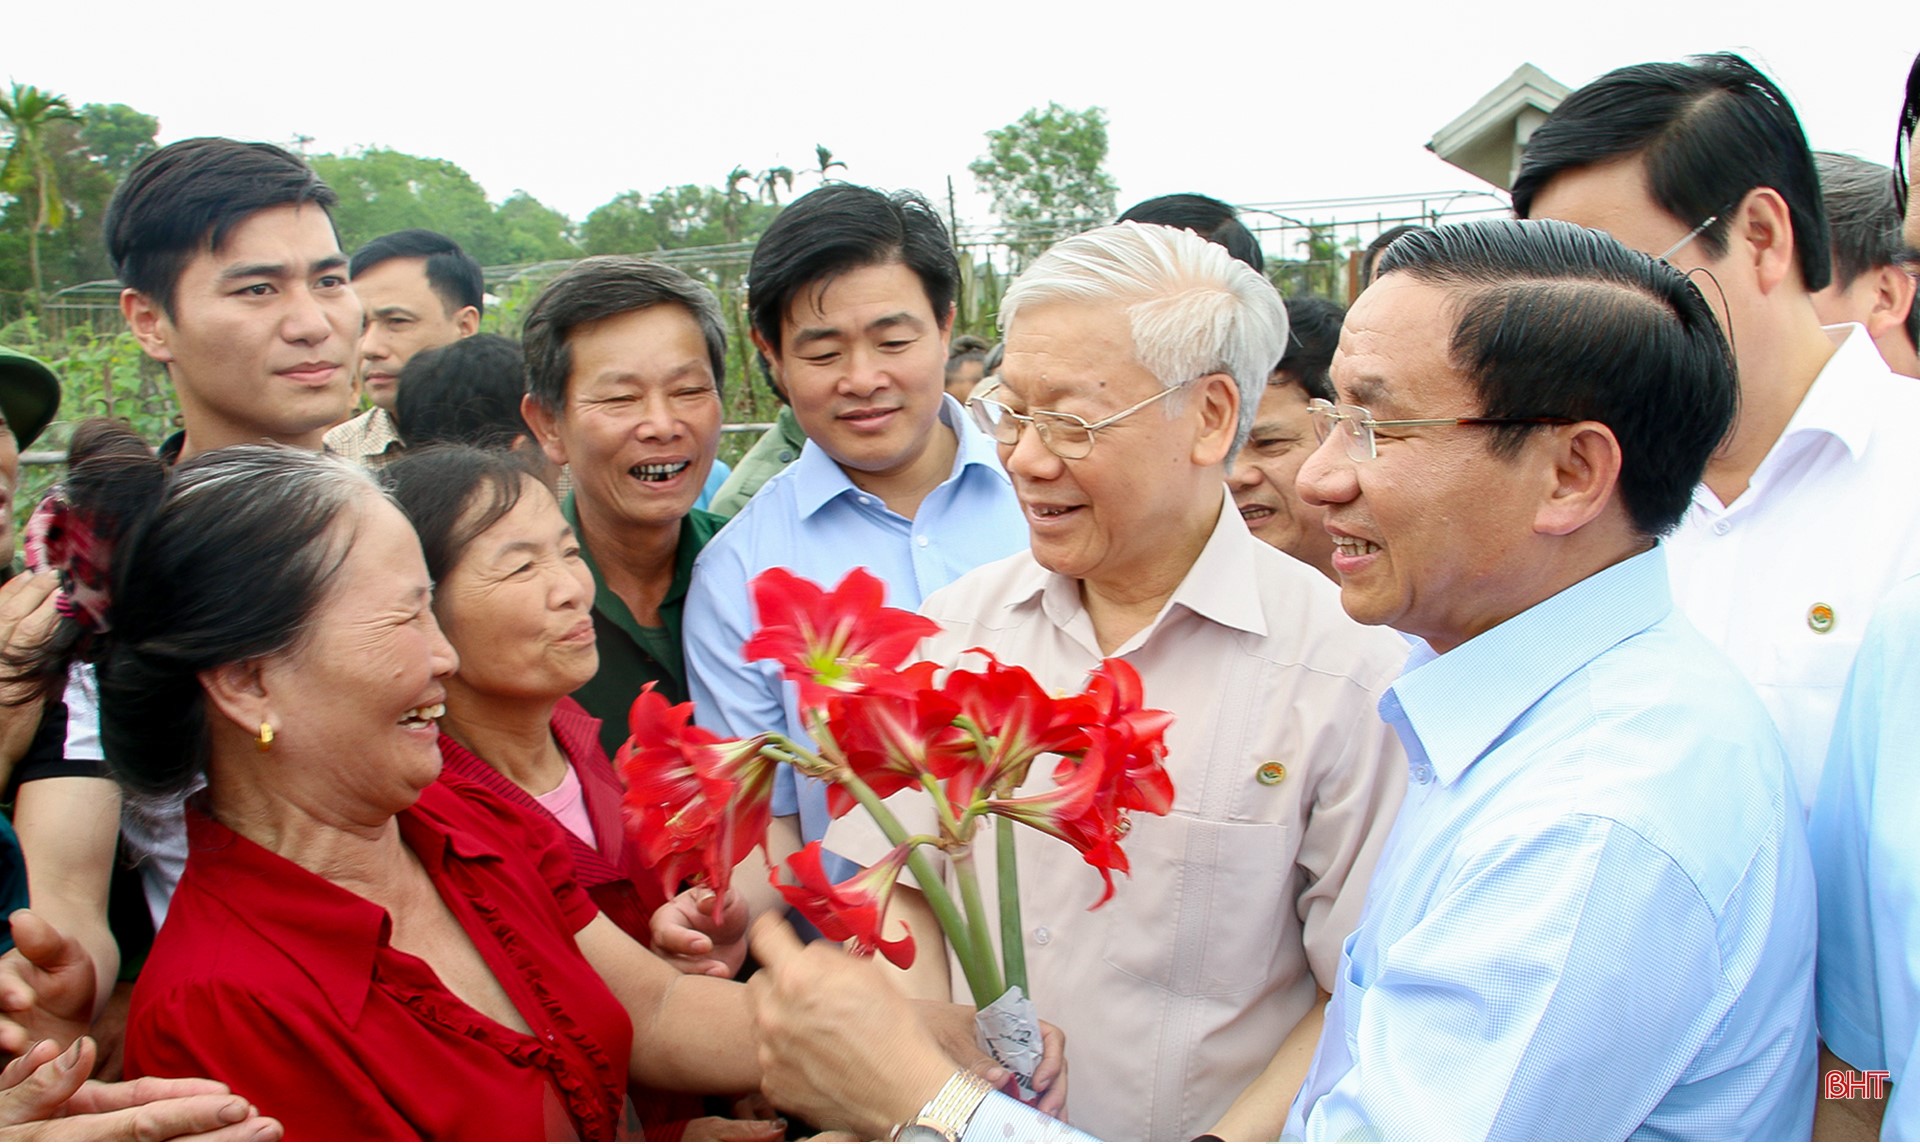 Từng bước hiện thực hóa mục tiêu chủ nghĩa xã hội trên đất Hồng Lam